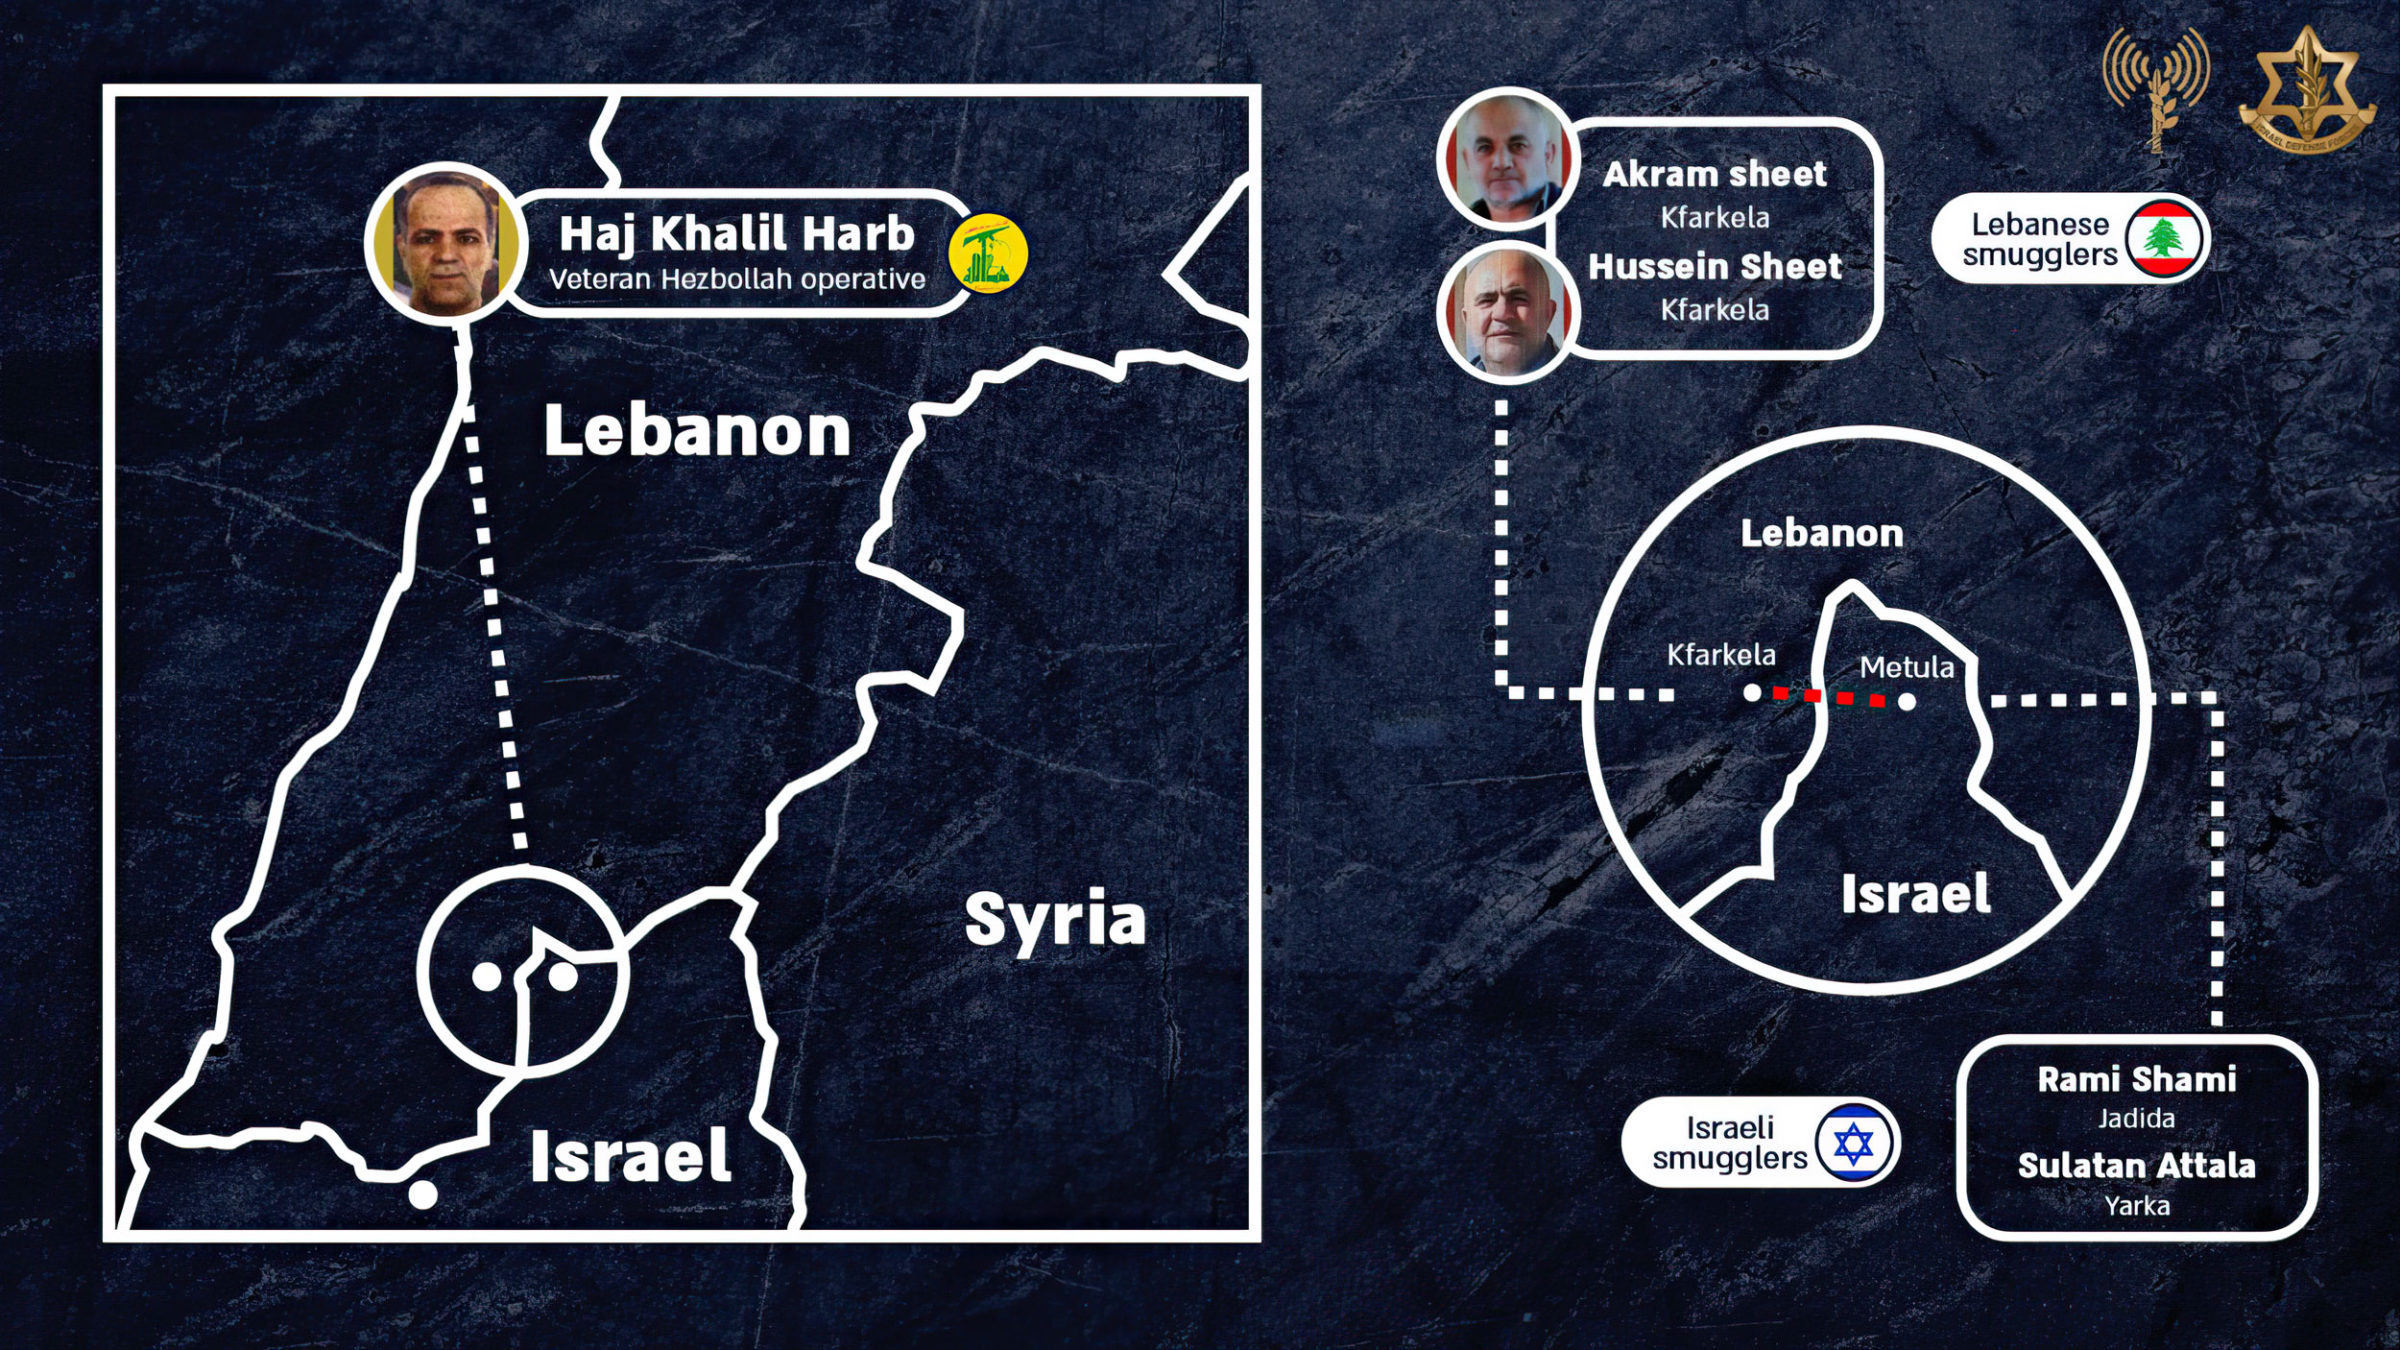 Esta infografía publicada por las Fuerzas de Defensa de Israel el 20 de marzo de 2022 muestra detalles sobre los operativos de Hezbolá y los ciudadanos israelíes que están detrás de los supuestos intentos de contrabando. (Fuerzas de Defensa de Israel)